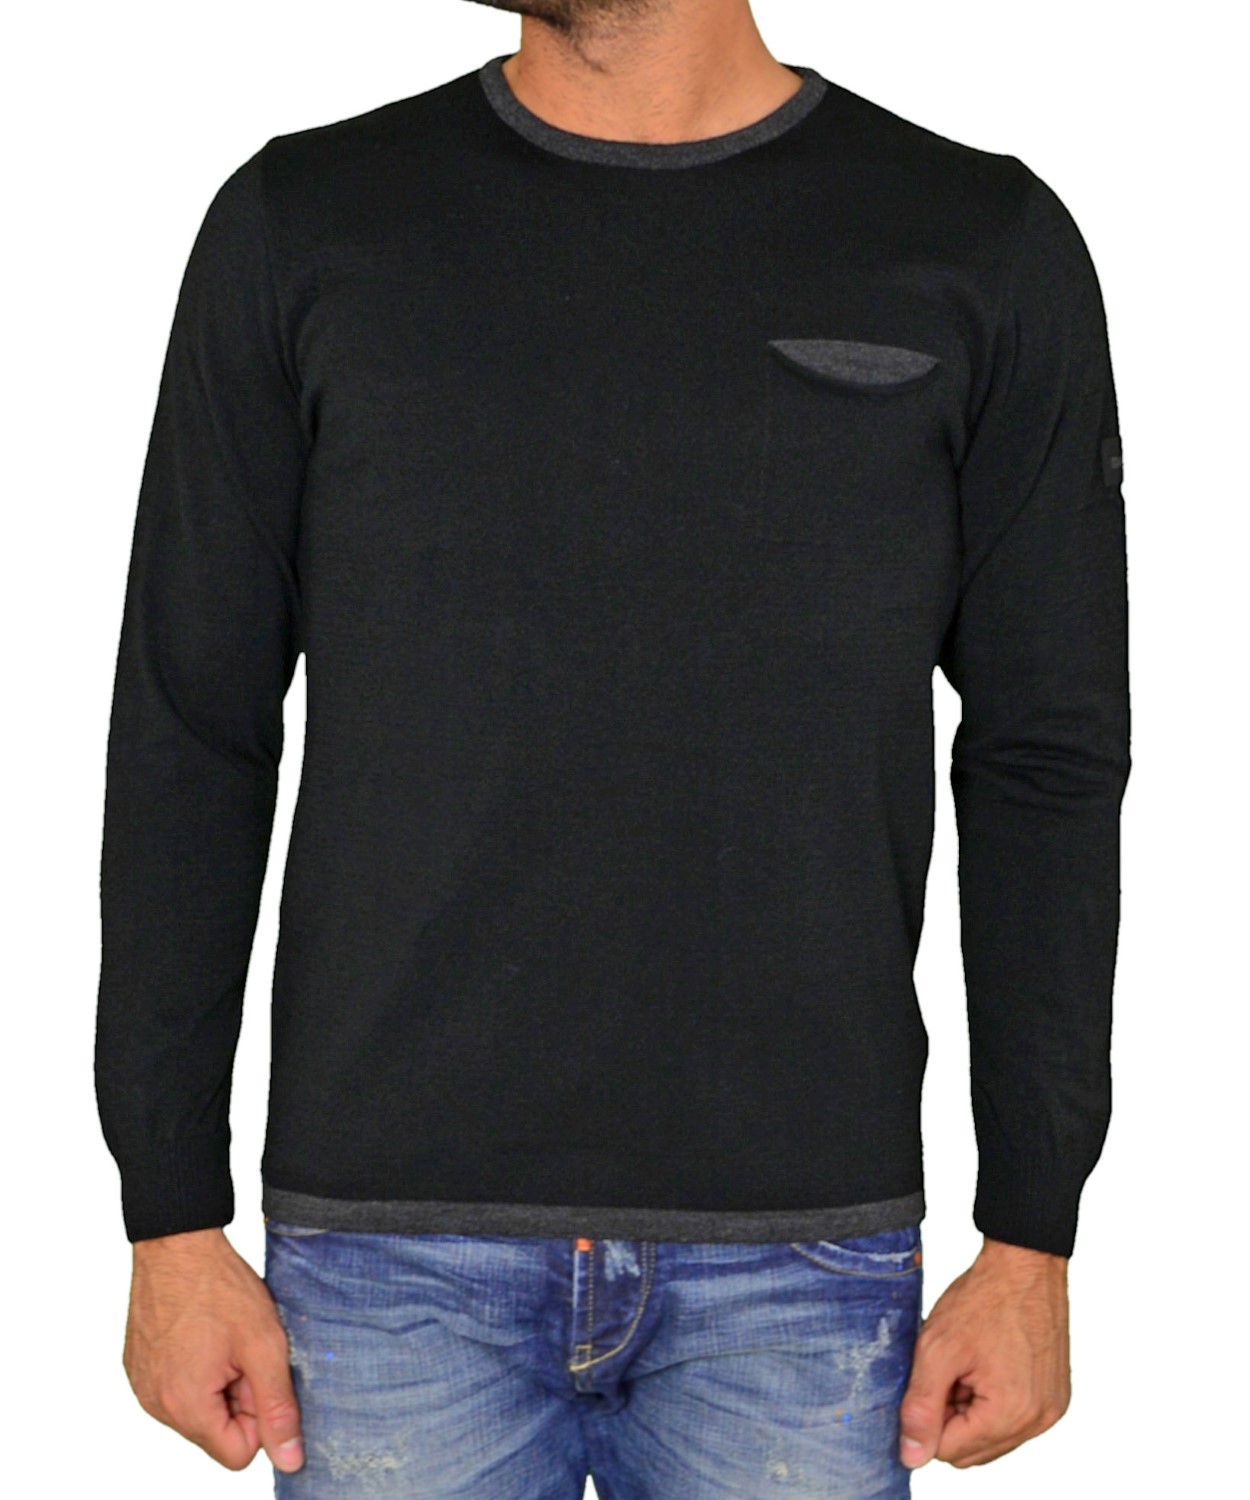 Ανδρική μακρυμάνικη πλεκτή μπλούζα Darious μαύρη 1716F